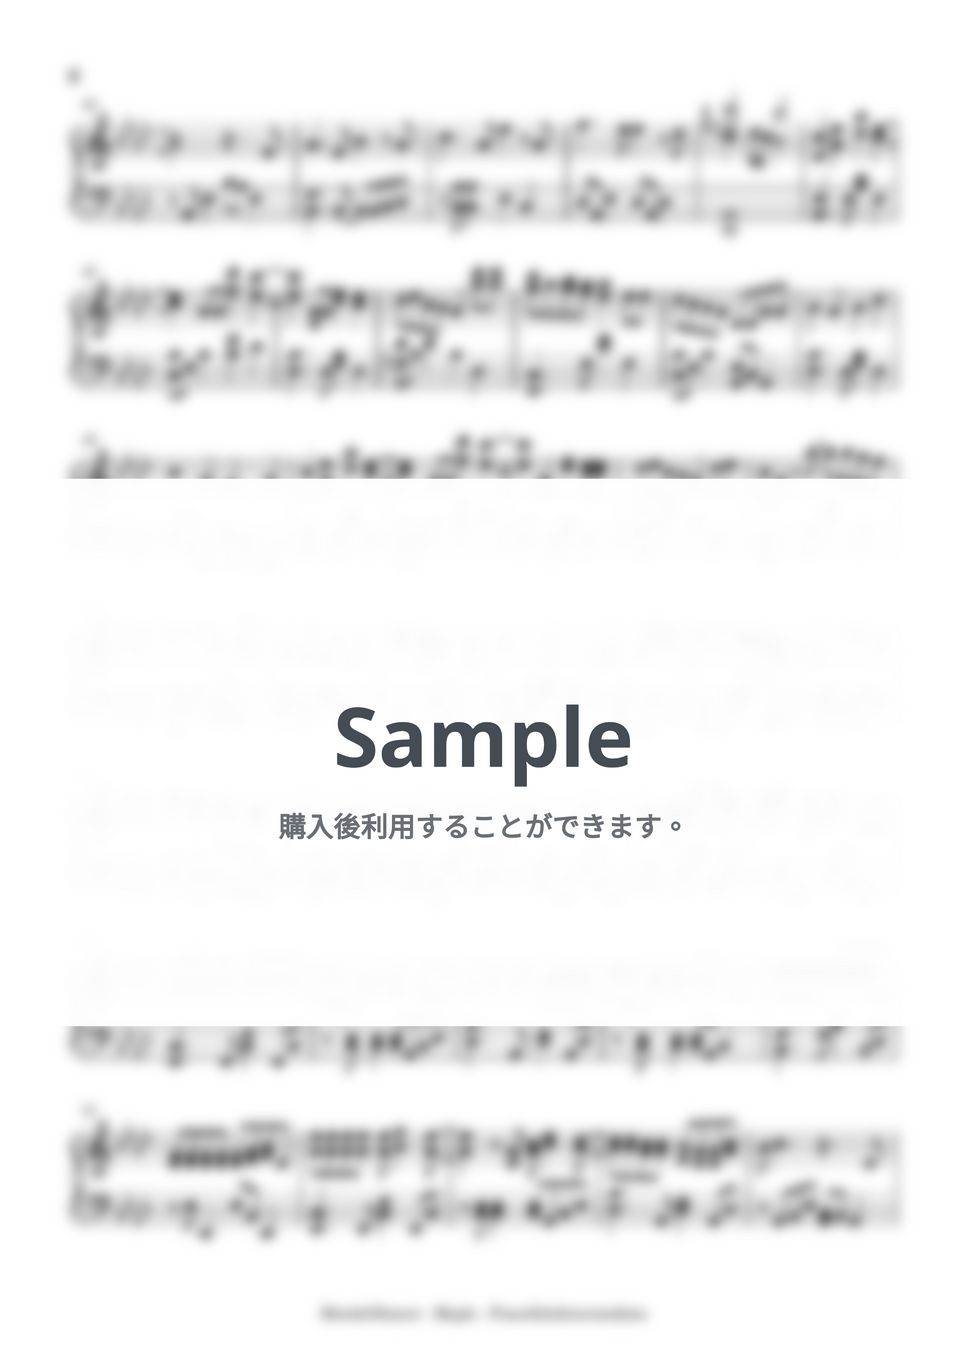 大森元貴 - メイプル(intermediate, piano) by Mopianic